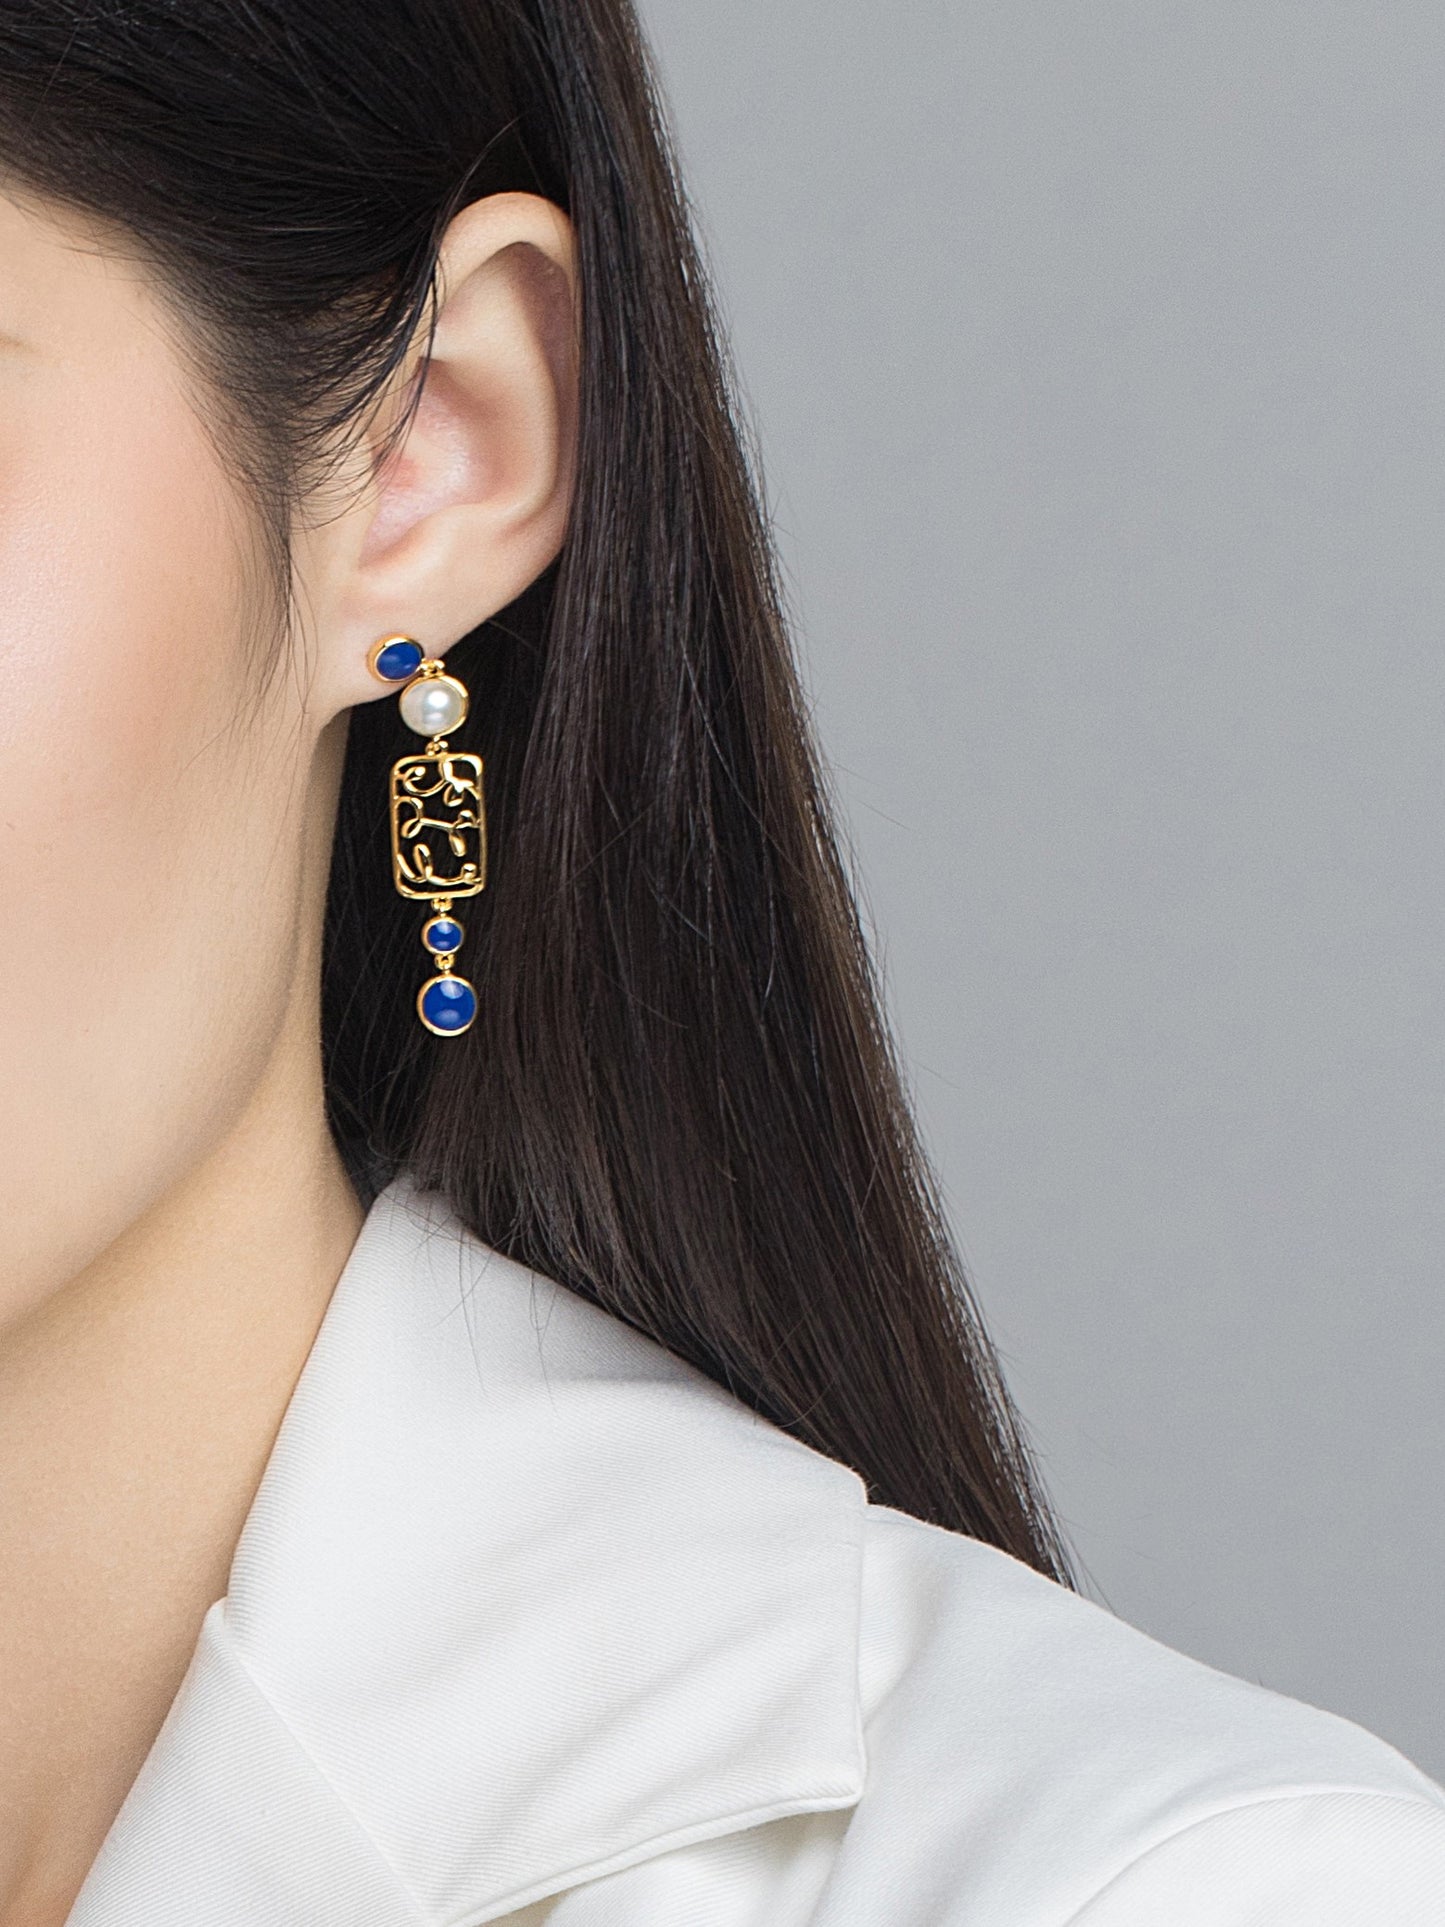 Blue & Golden Paris Flower Window Enamel Drop Earrings for Women